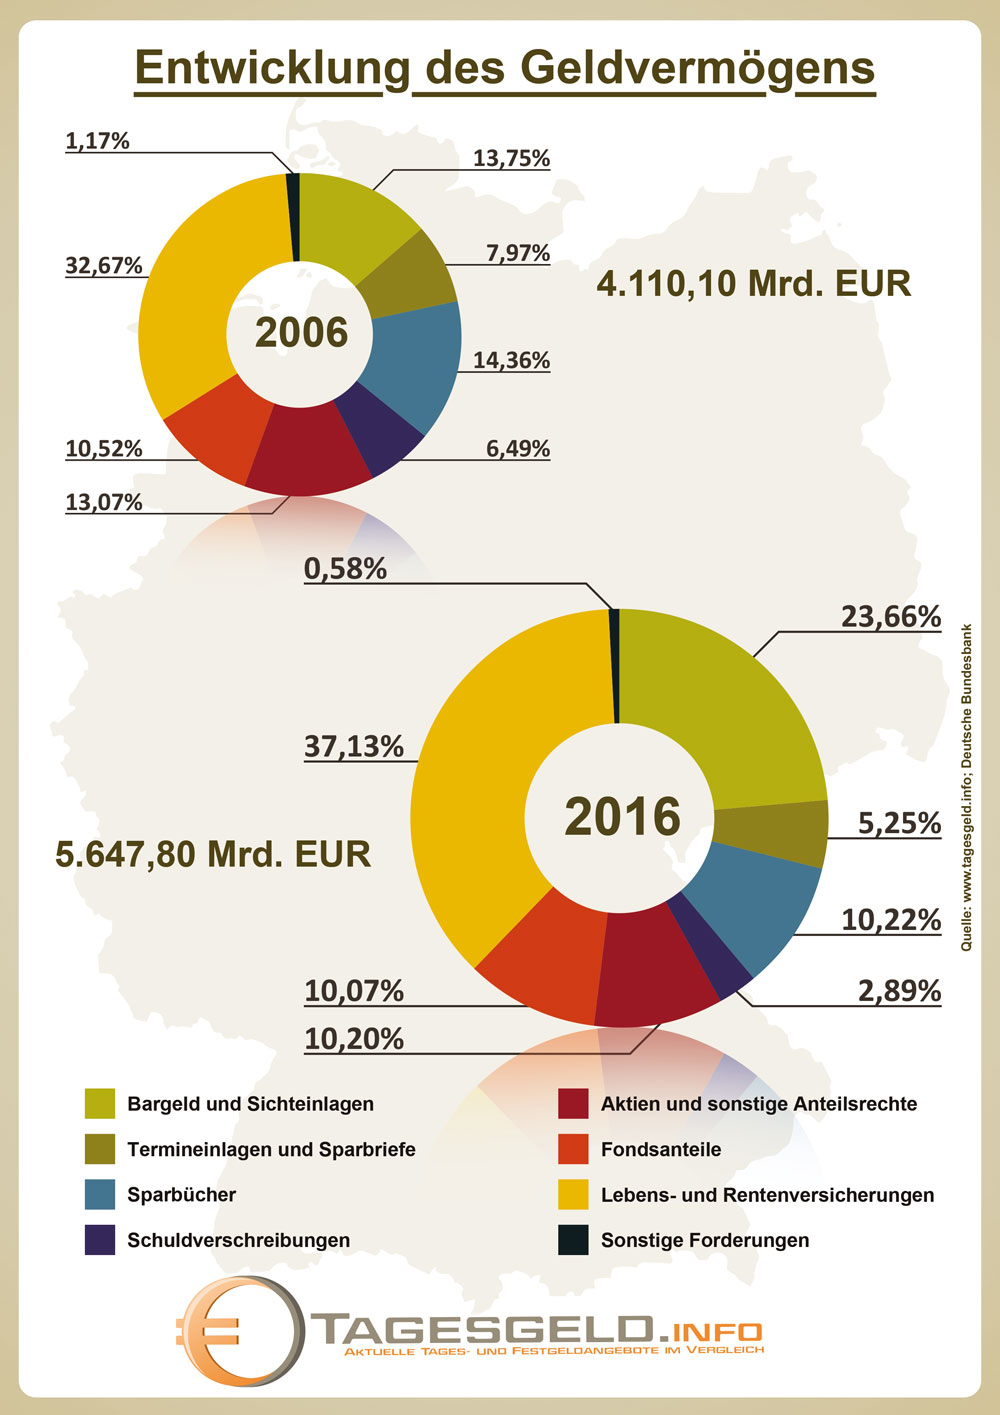 Infografik zur Struktur des Geldvermögens 2006 und 2016